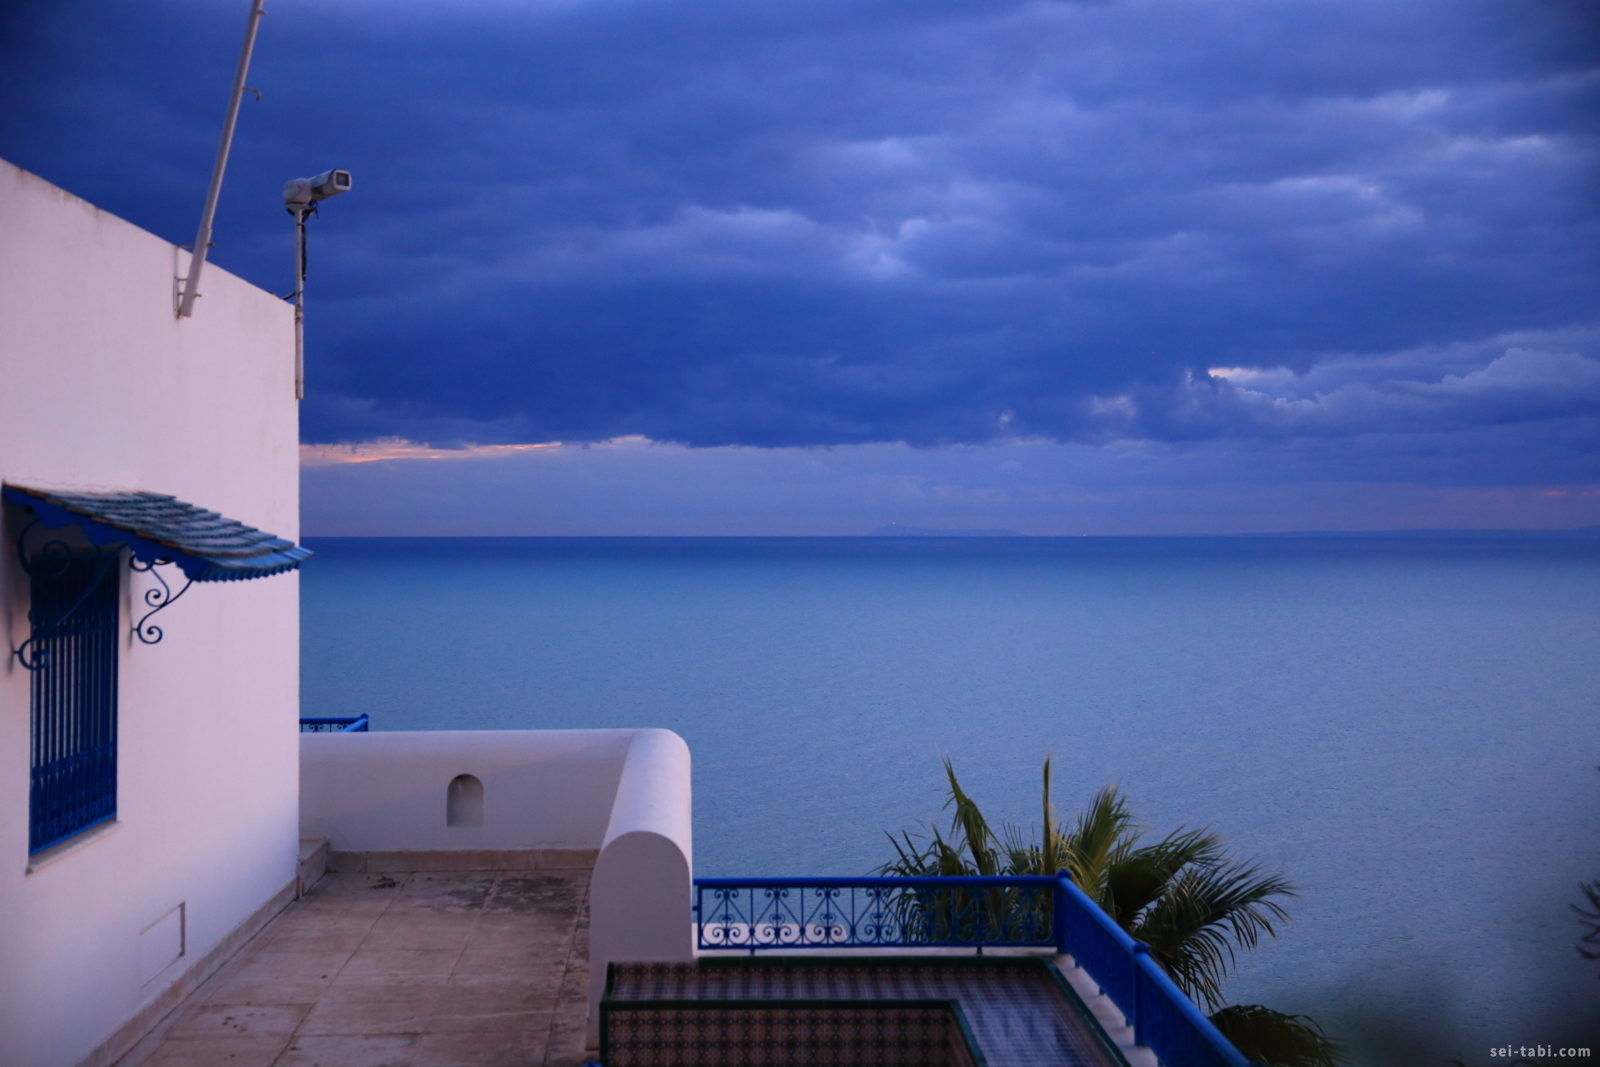 シディ ブ サイドのホテルにチェックイン 夕暮れの地中海 チュニジア旅行記 8 Seiの弾丸 海外一人旅blog